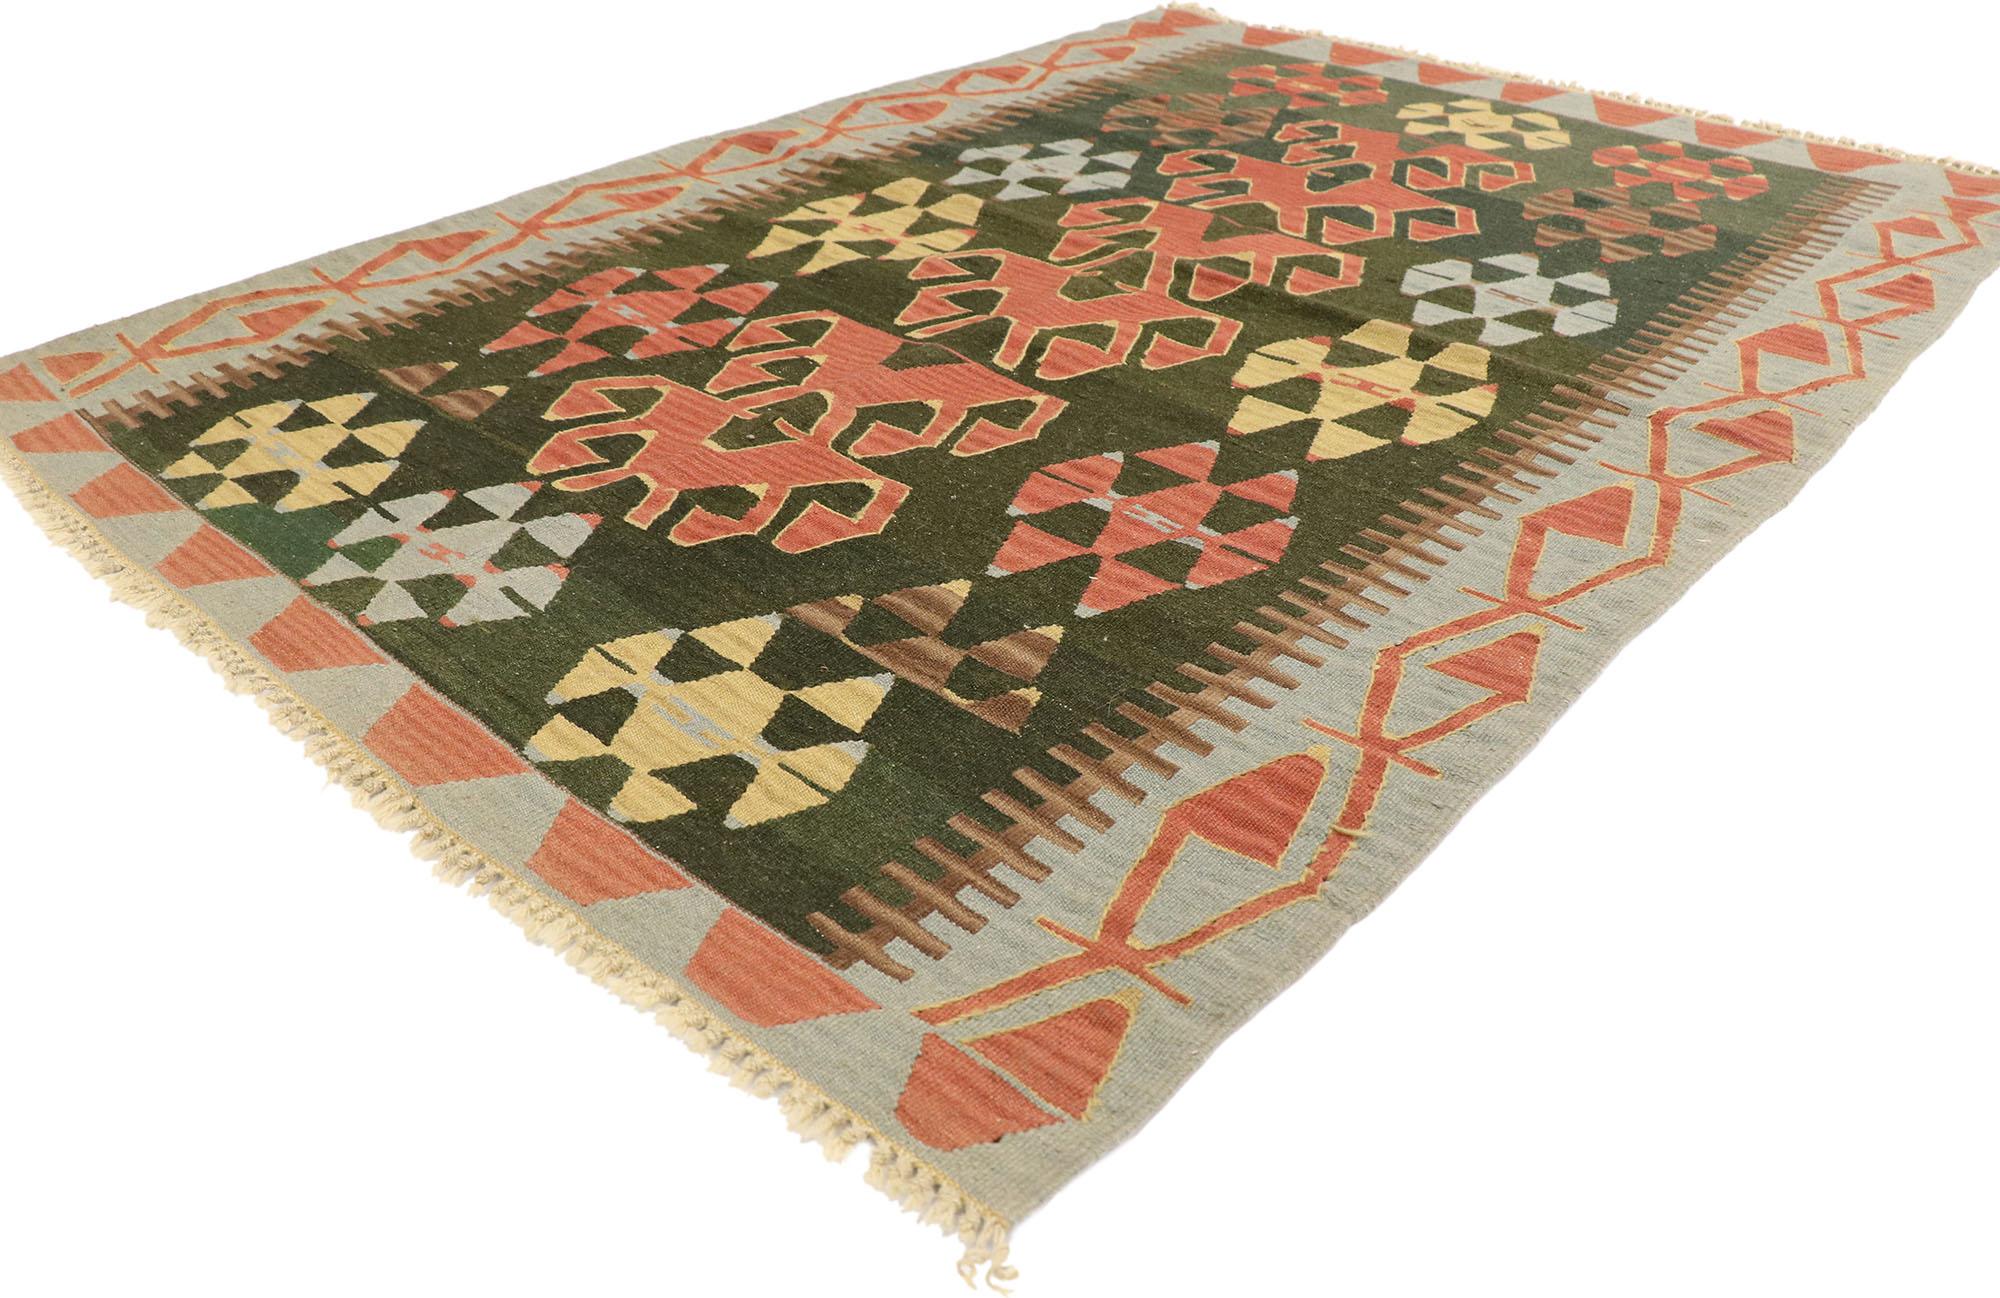 77995 Vieux tapis Persan Shiraz Kilim avec style tribal 04'01 x 05'10. Plein de petits détails et un design expressif audacieux combiné avec des couleurs vibrantes et un style tribal, ce tapis kilim persan vintage en laine tissé à la main est une